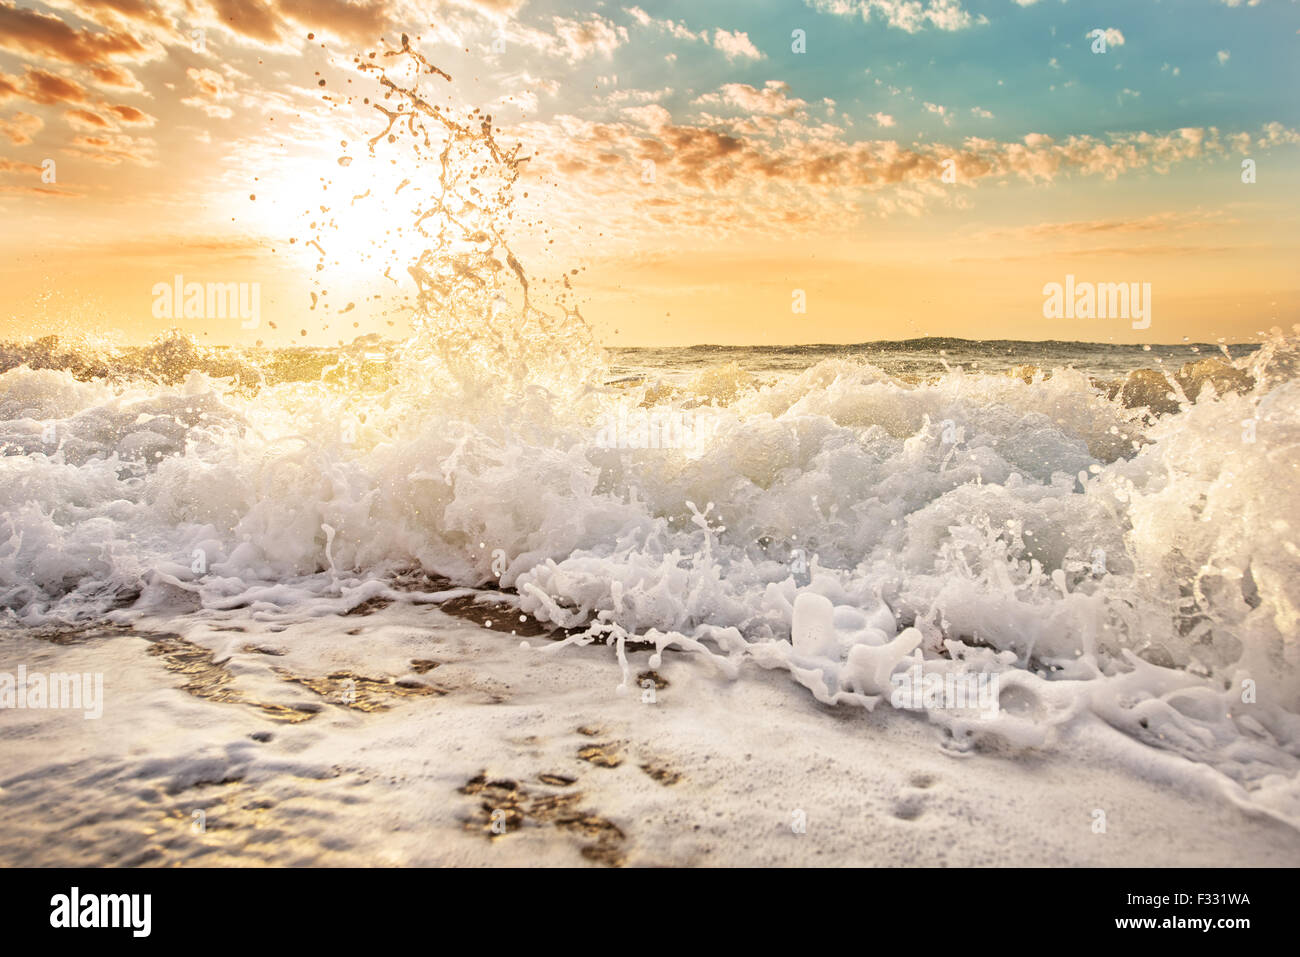 Wave splashes. Stock Photo